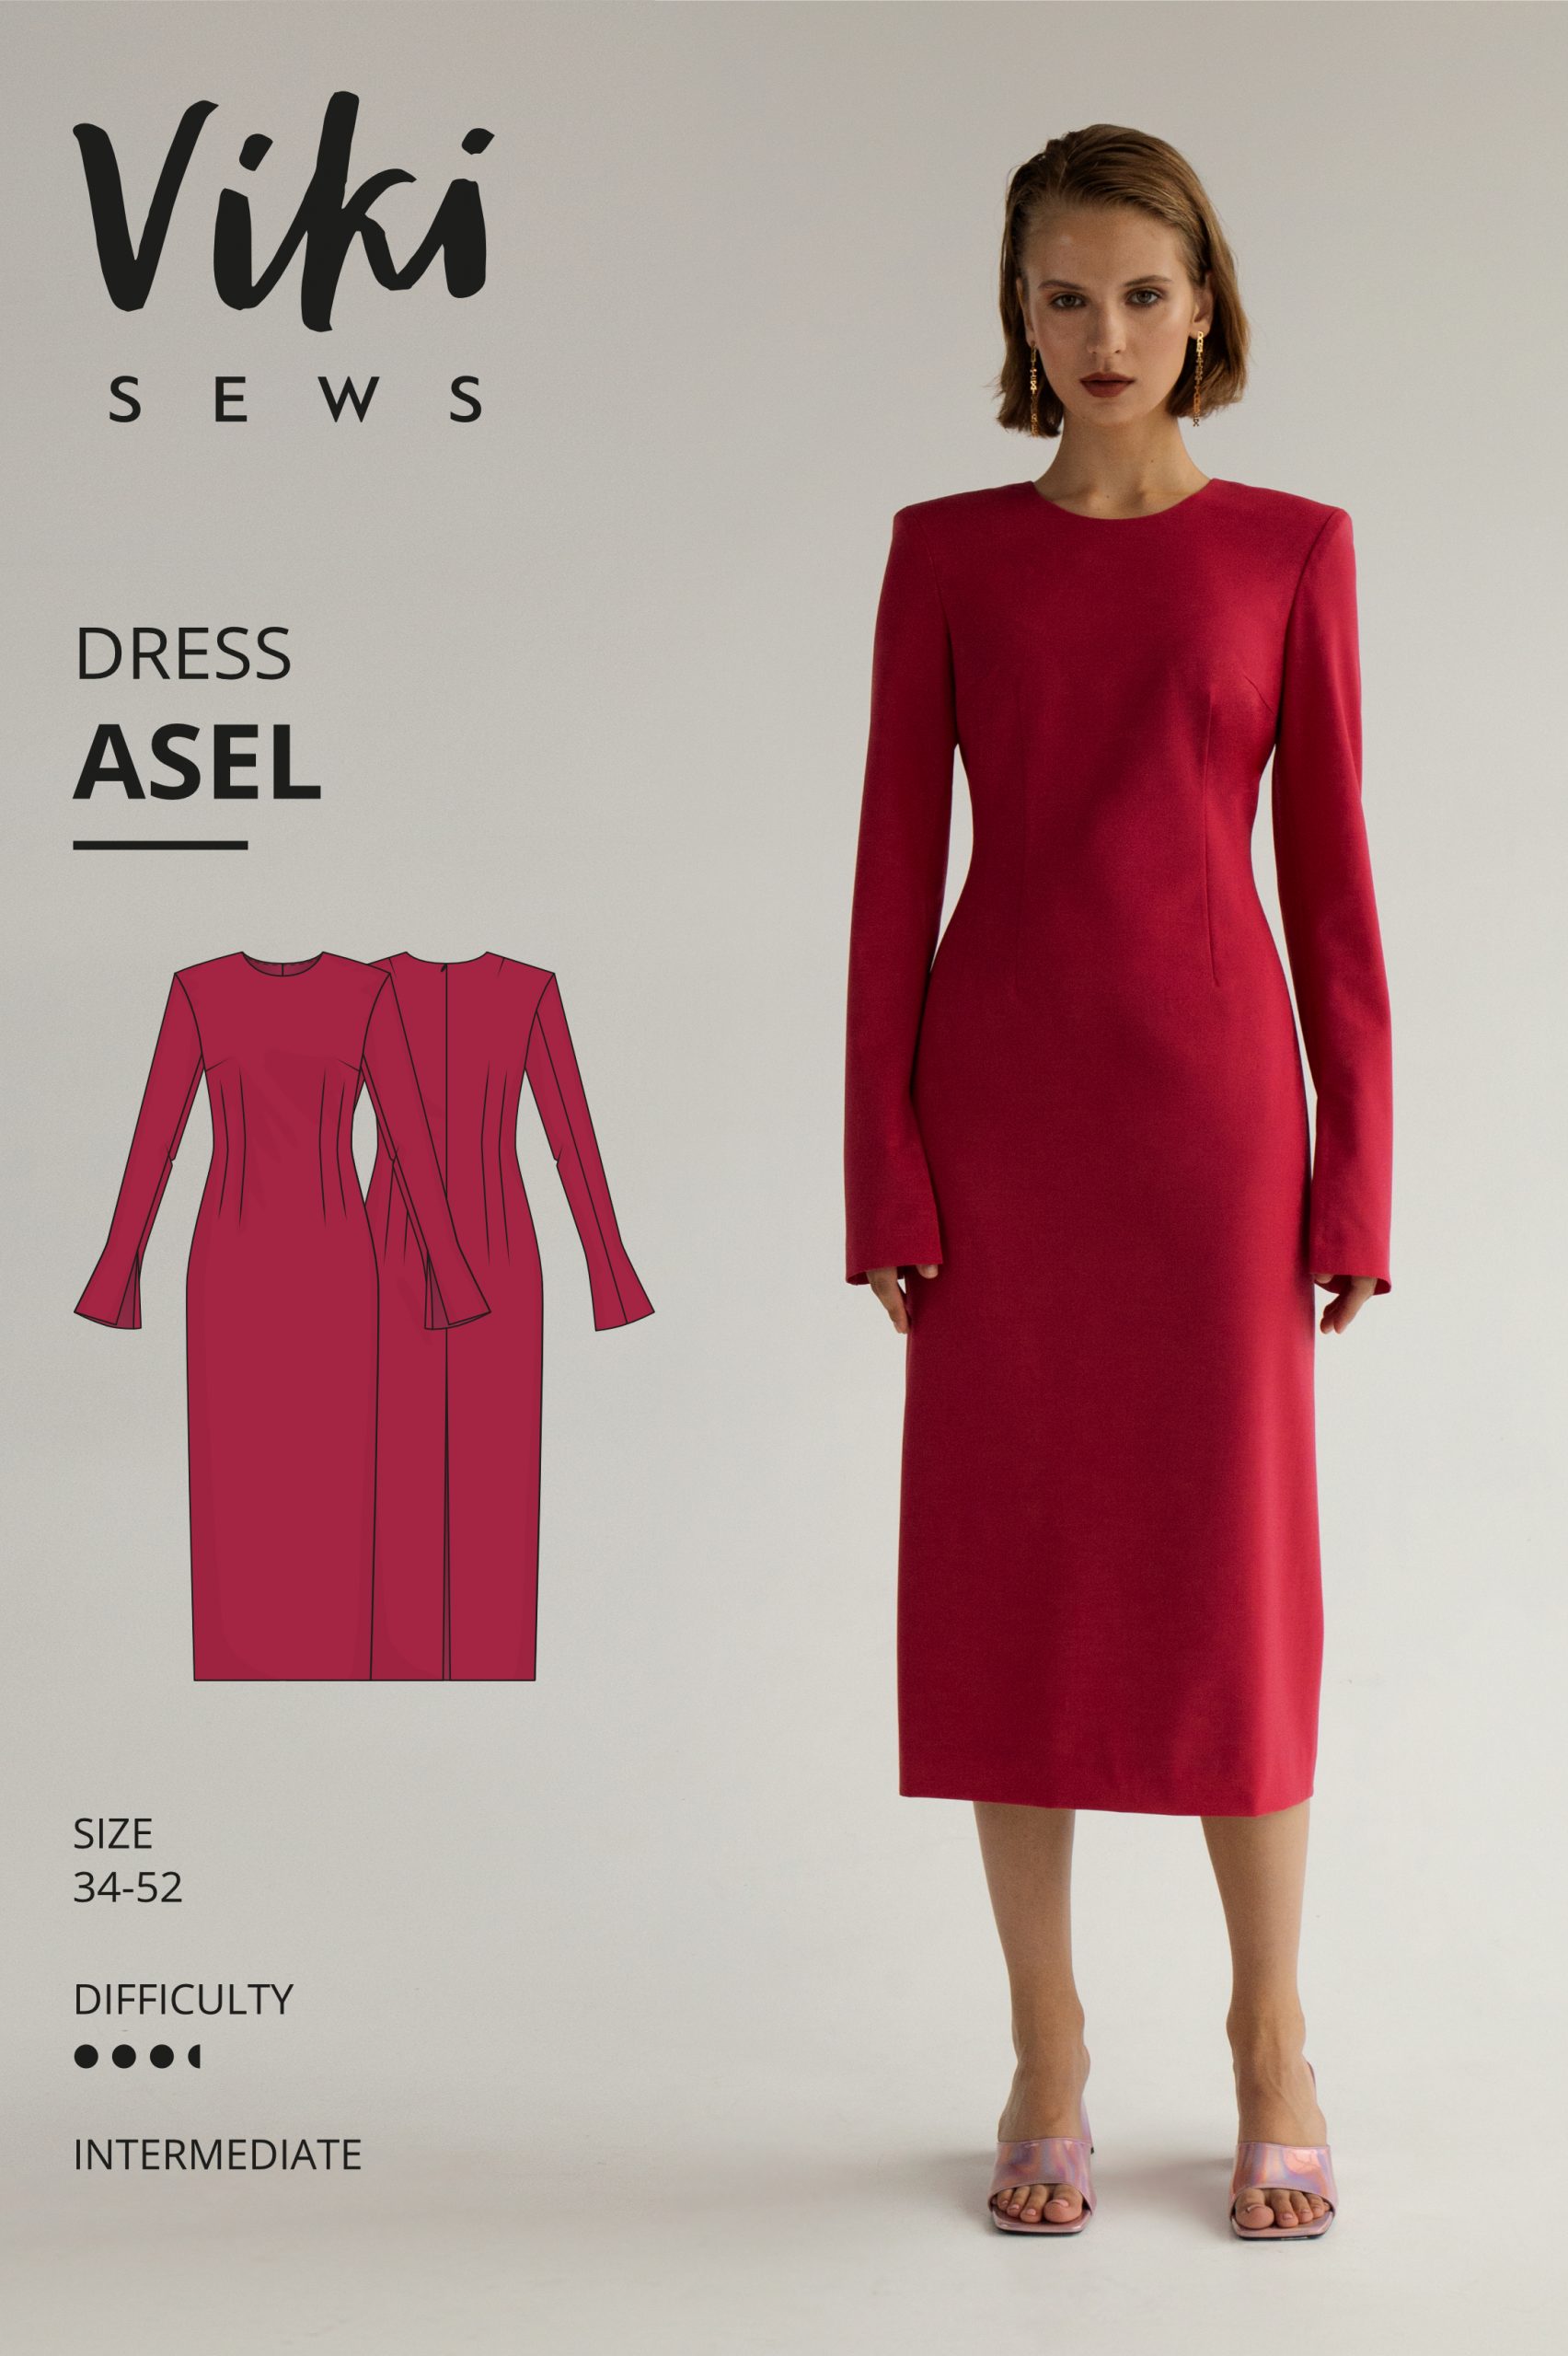 Vikisews Asel Dress PDF